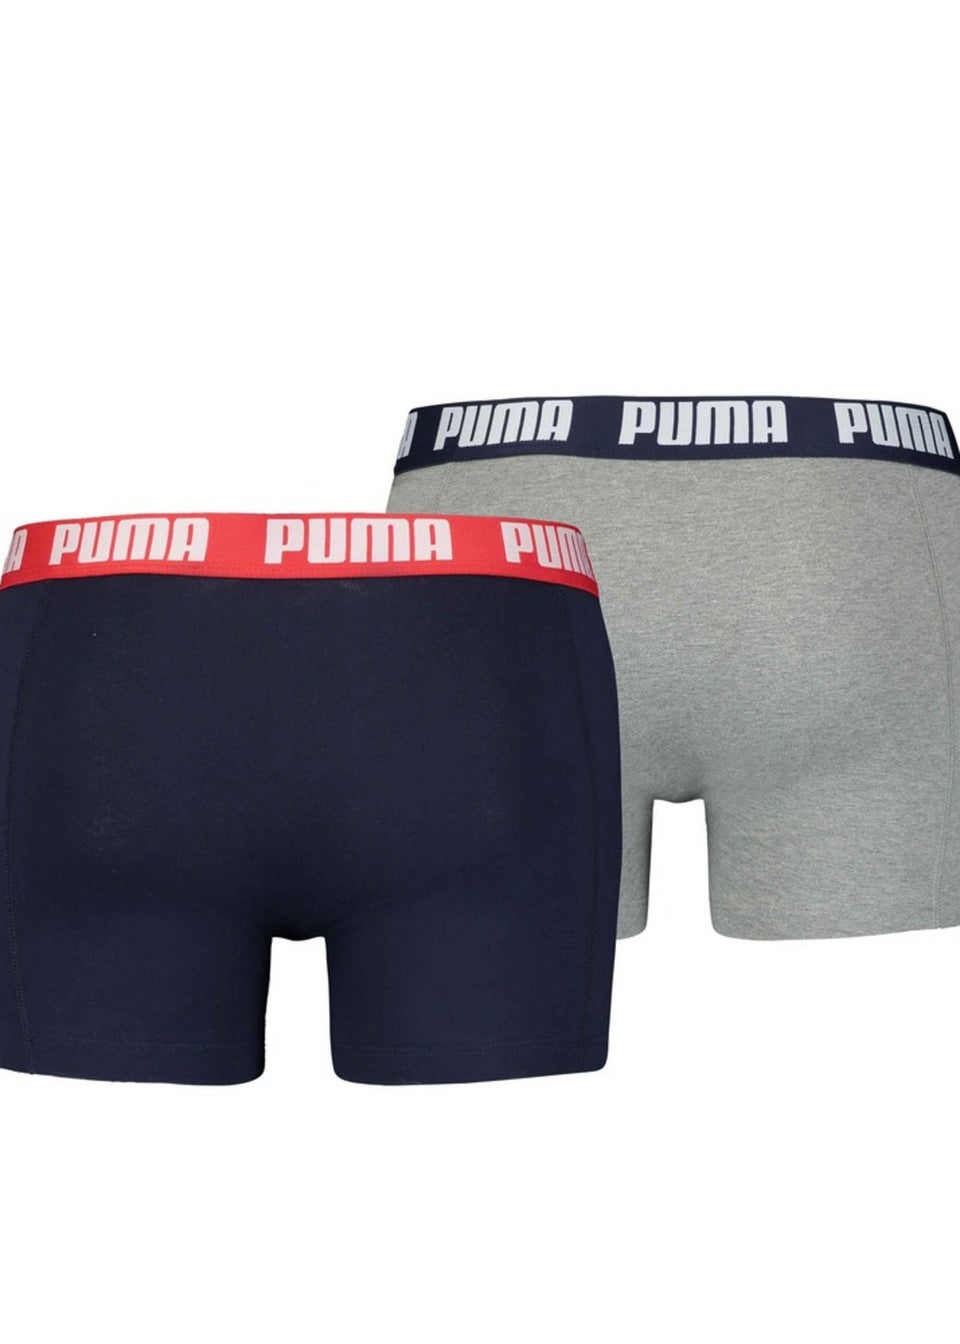 Puma Grey/Navy Basic Boxer Shorts (Pack of 2)